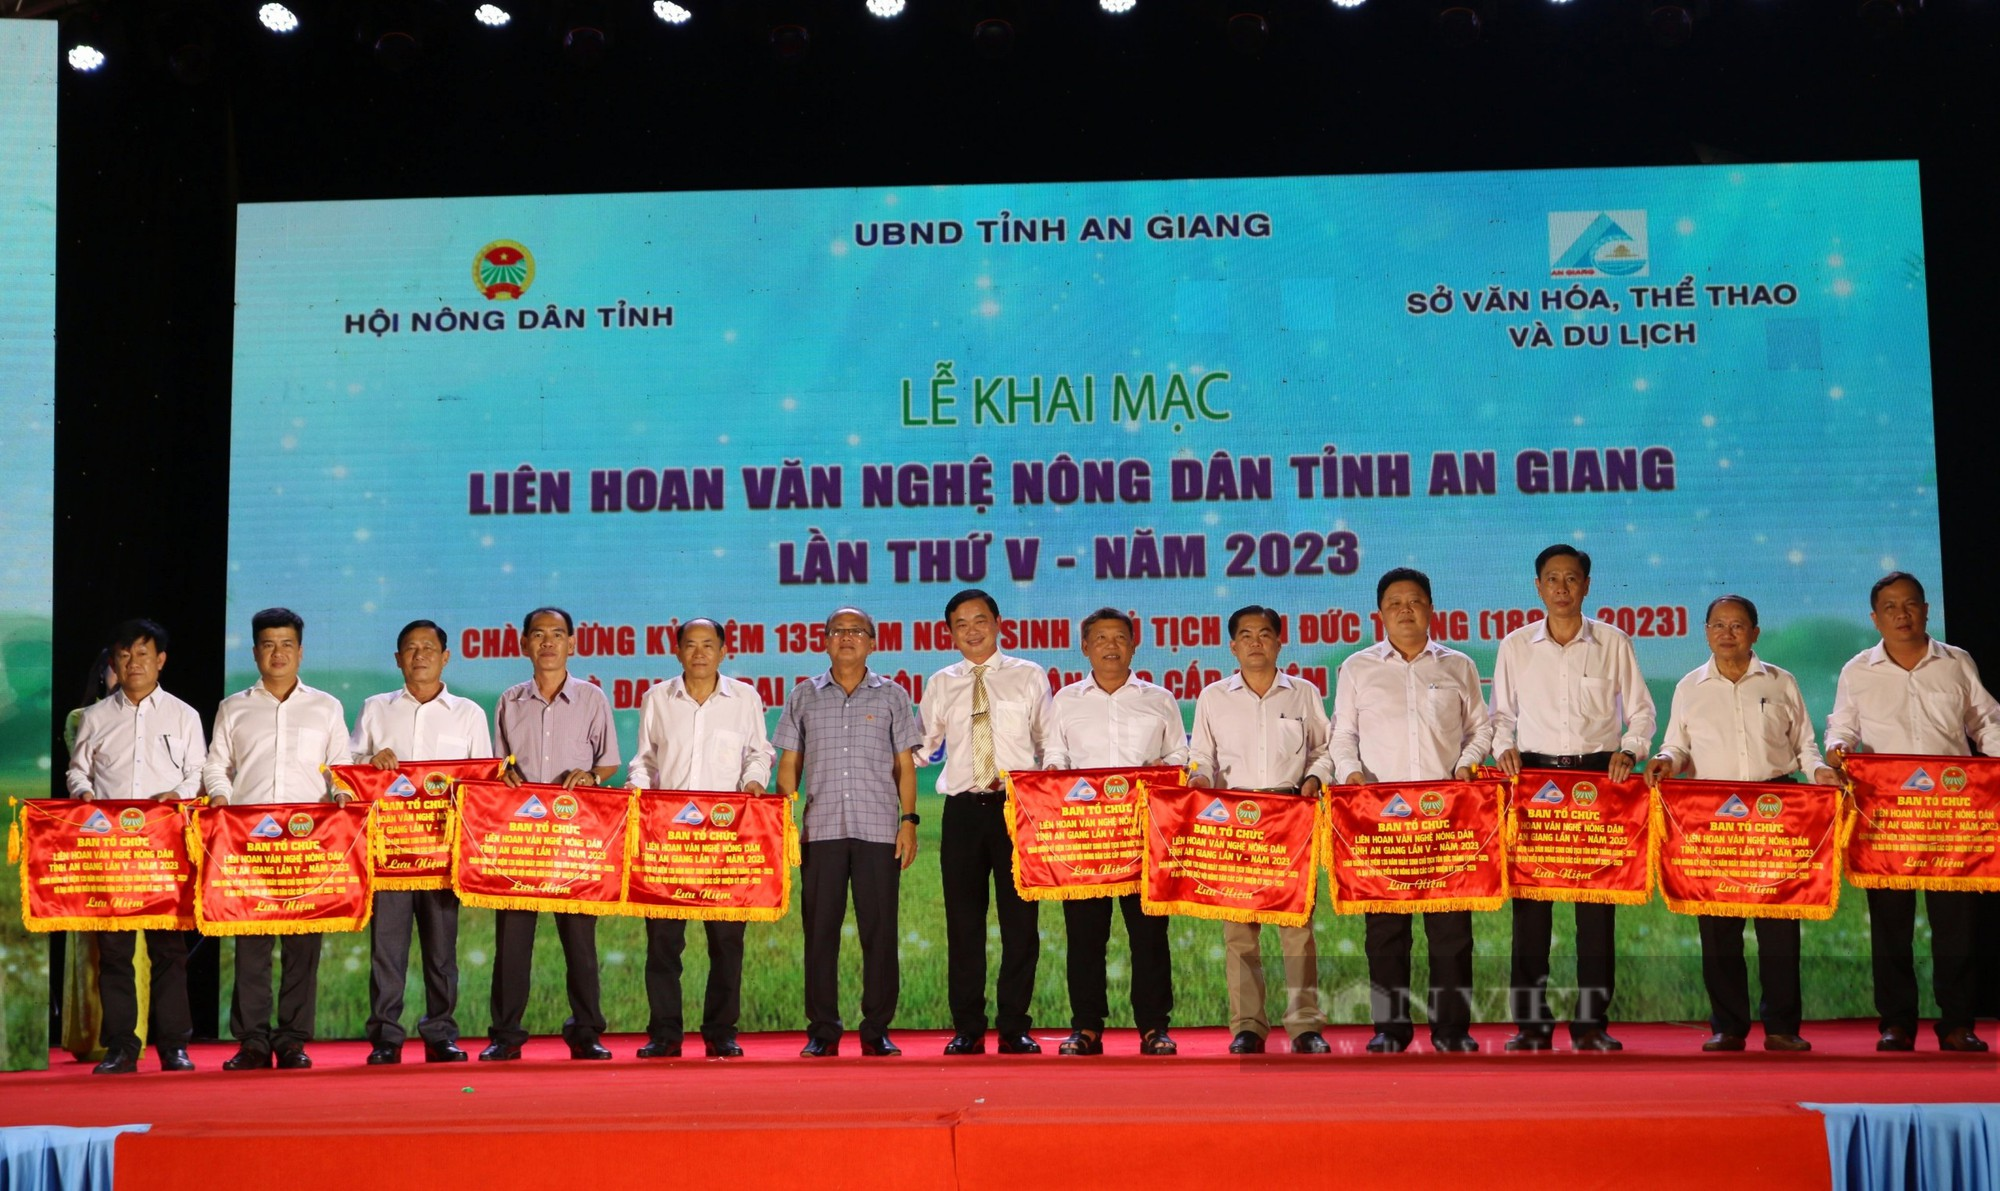 Liên hoan Văn nghệ nông dân tỉnh An Giang lần thứ V năm 2023 - Ảnh 1.